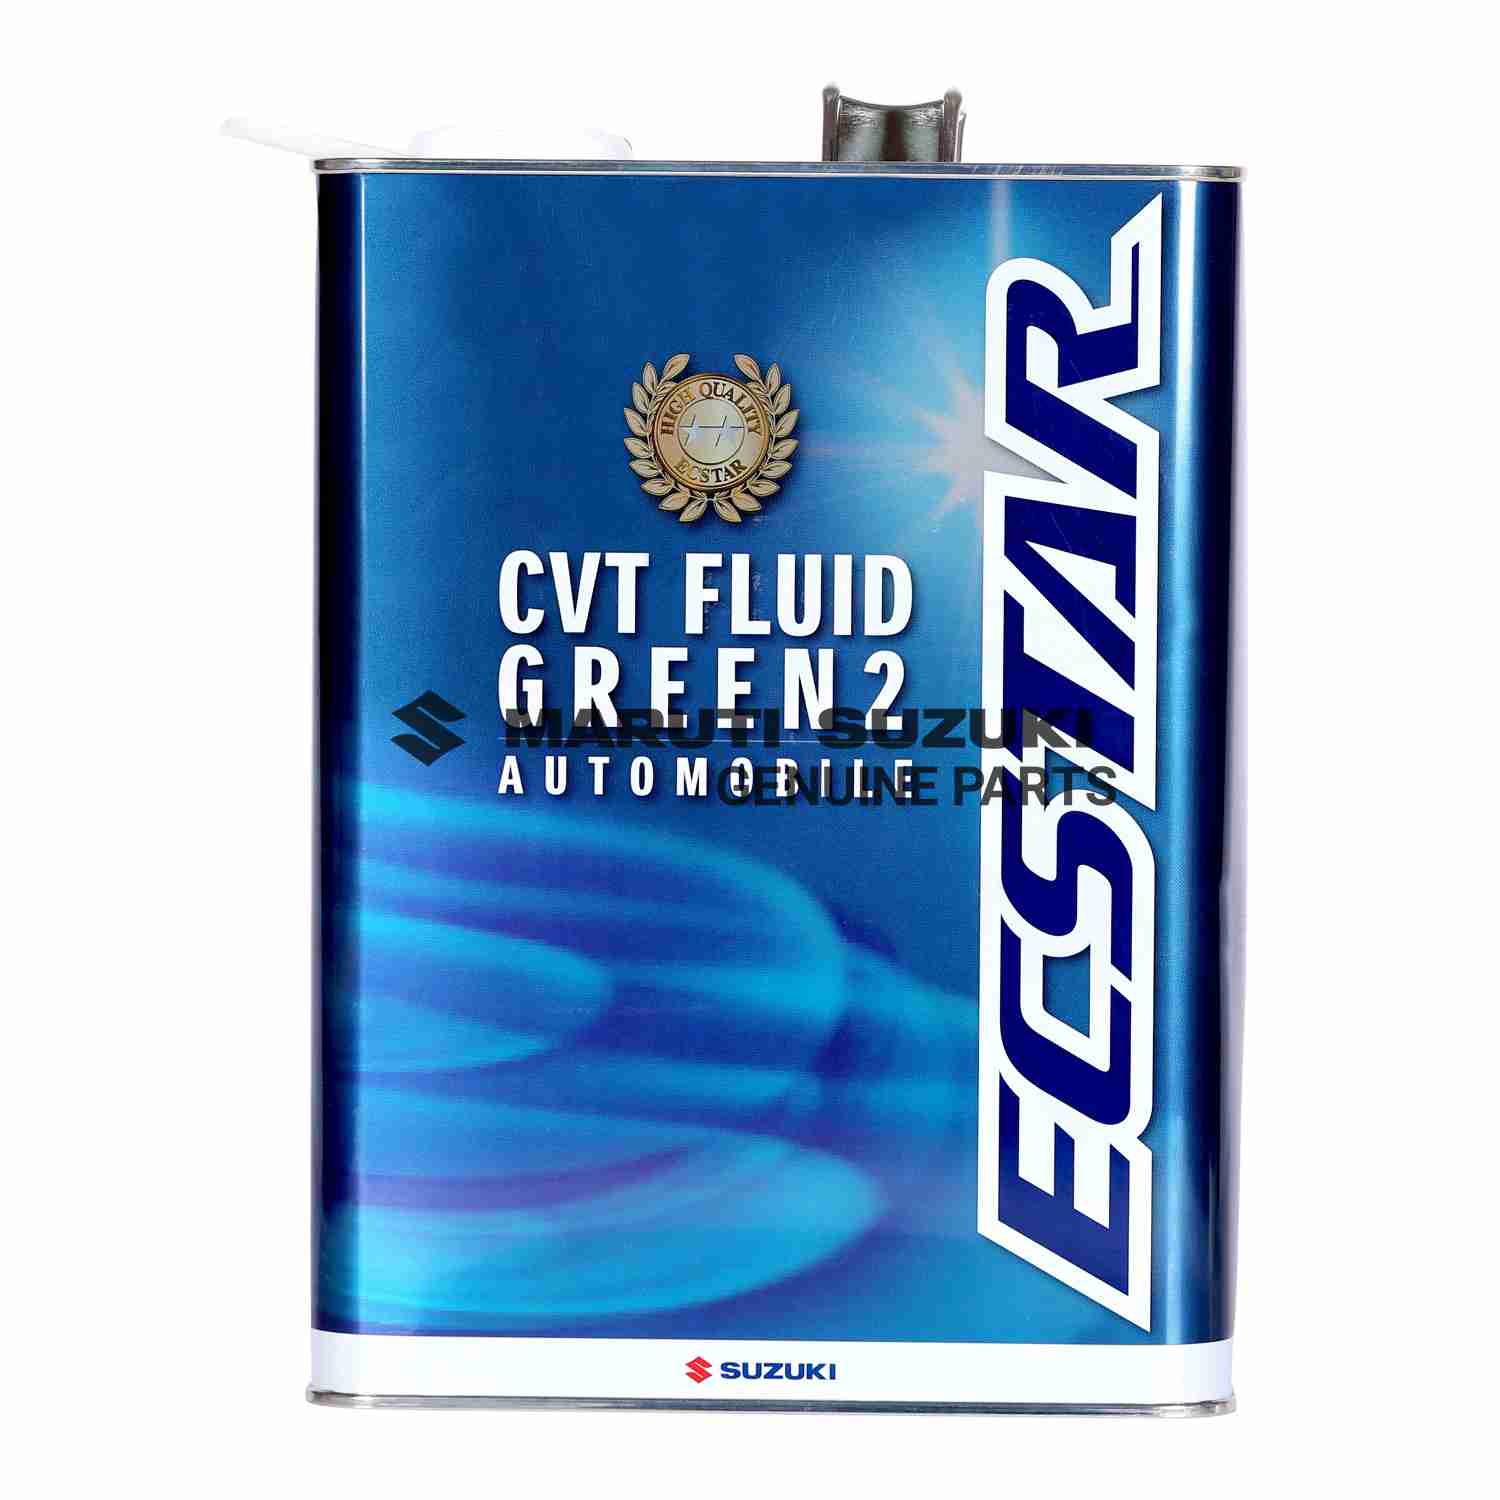 CVT FLUID GREEN-2